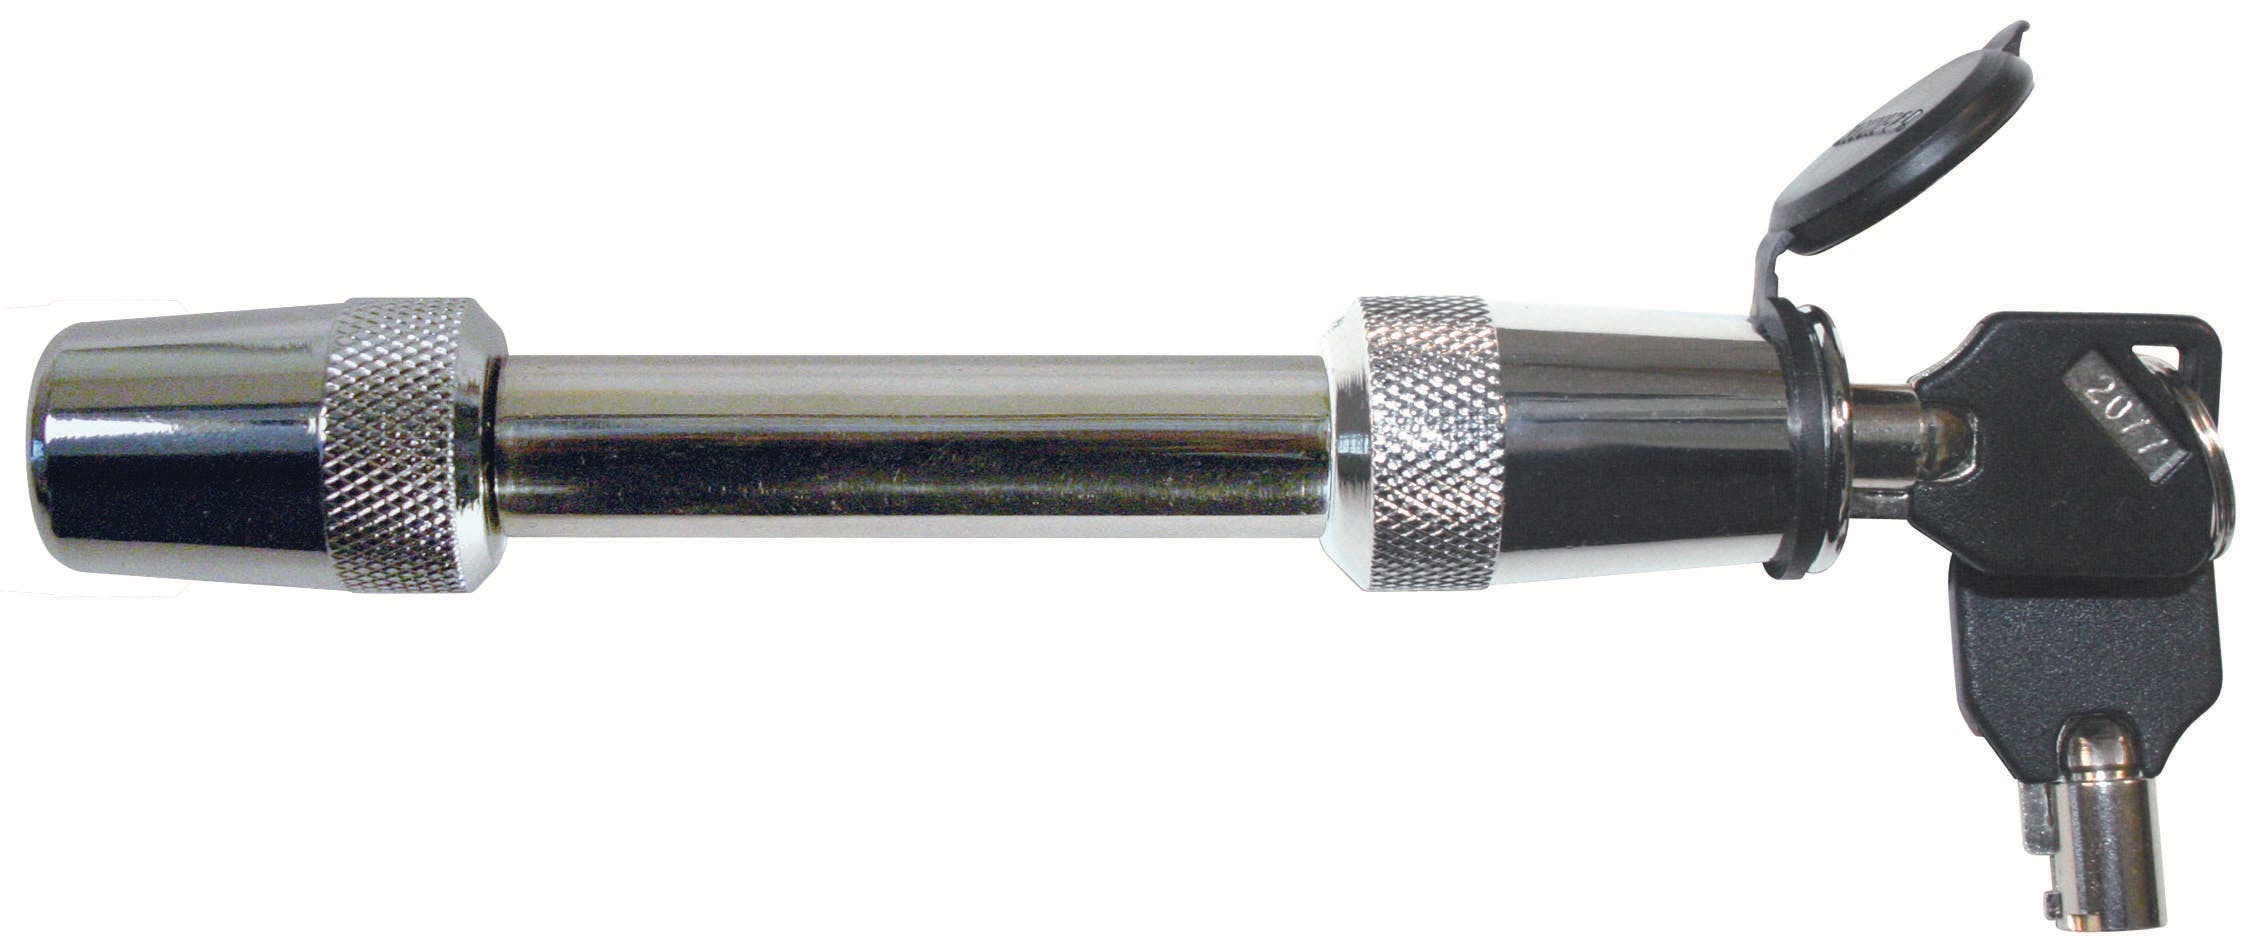 TRIMAX SXT3 Premium 100% Stainless Steel 5/8 inch Key Receiver Lock